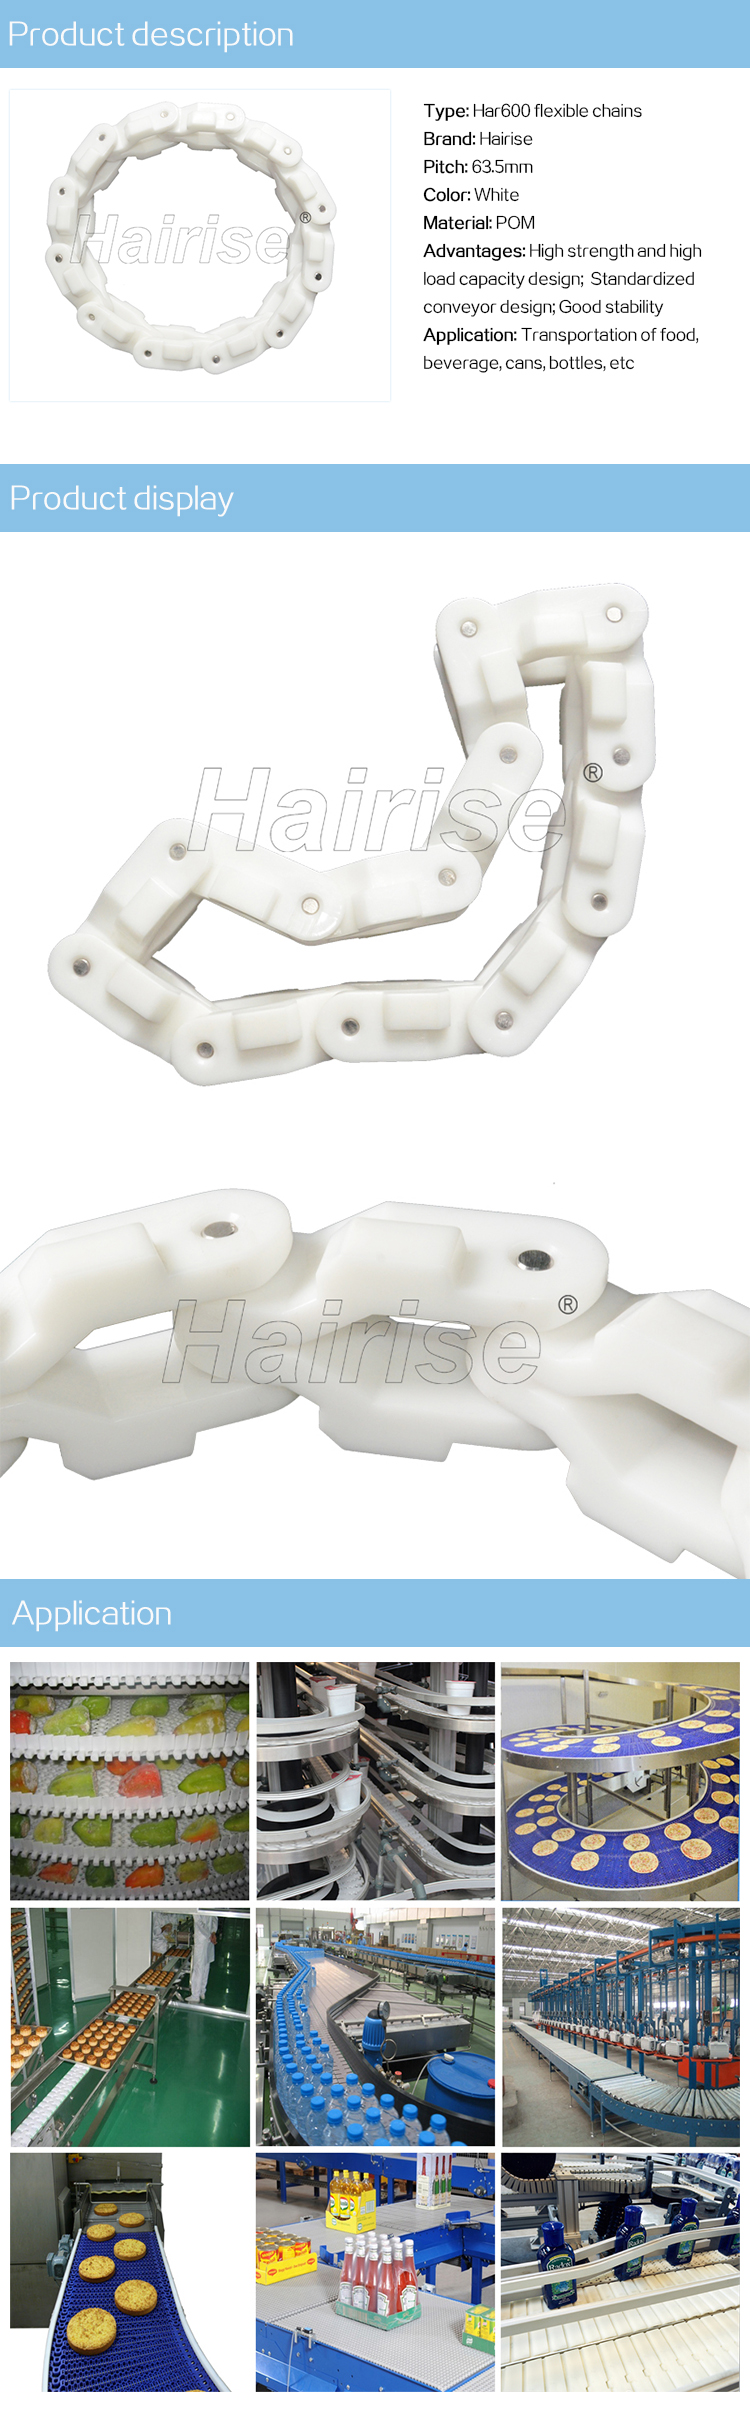 Har600 series flexible chains.jpg